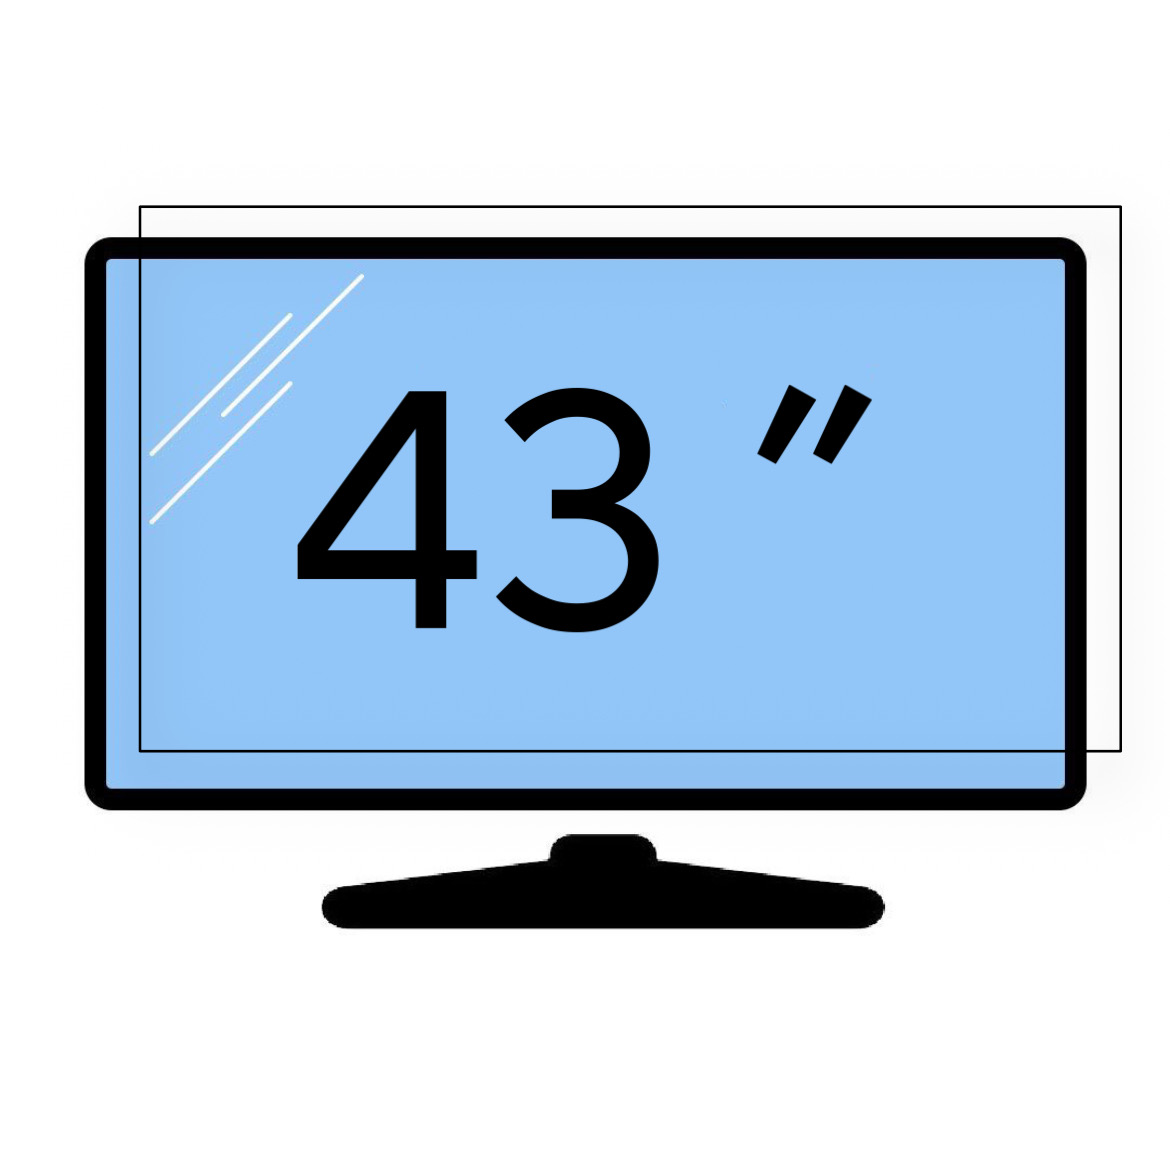 محافظ صفحه تلویزیون 43 اینچ تایوانی 2 میل